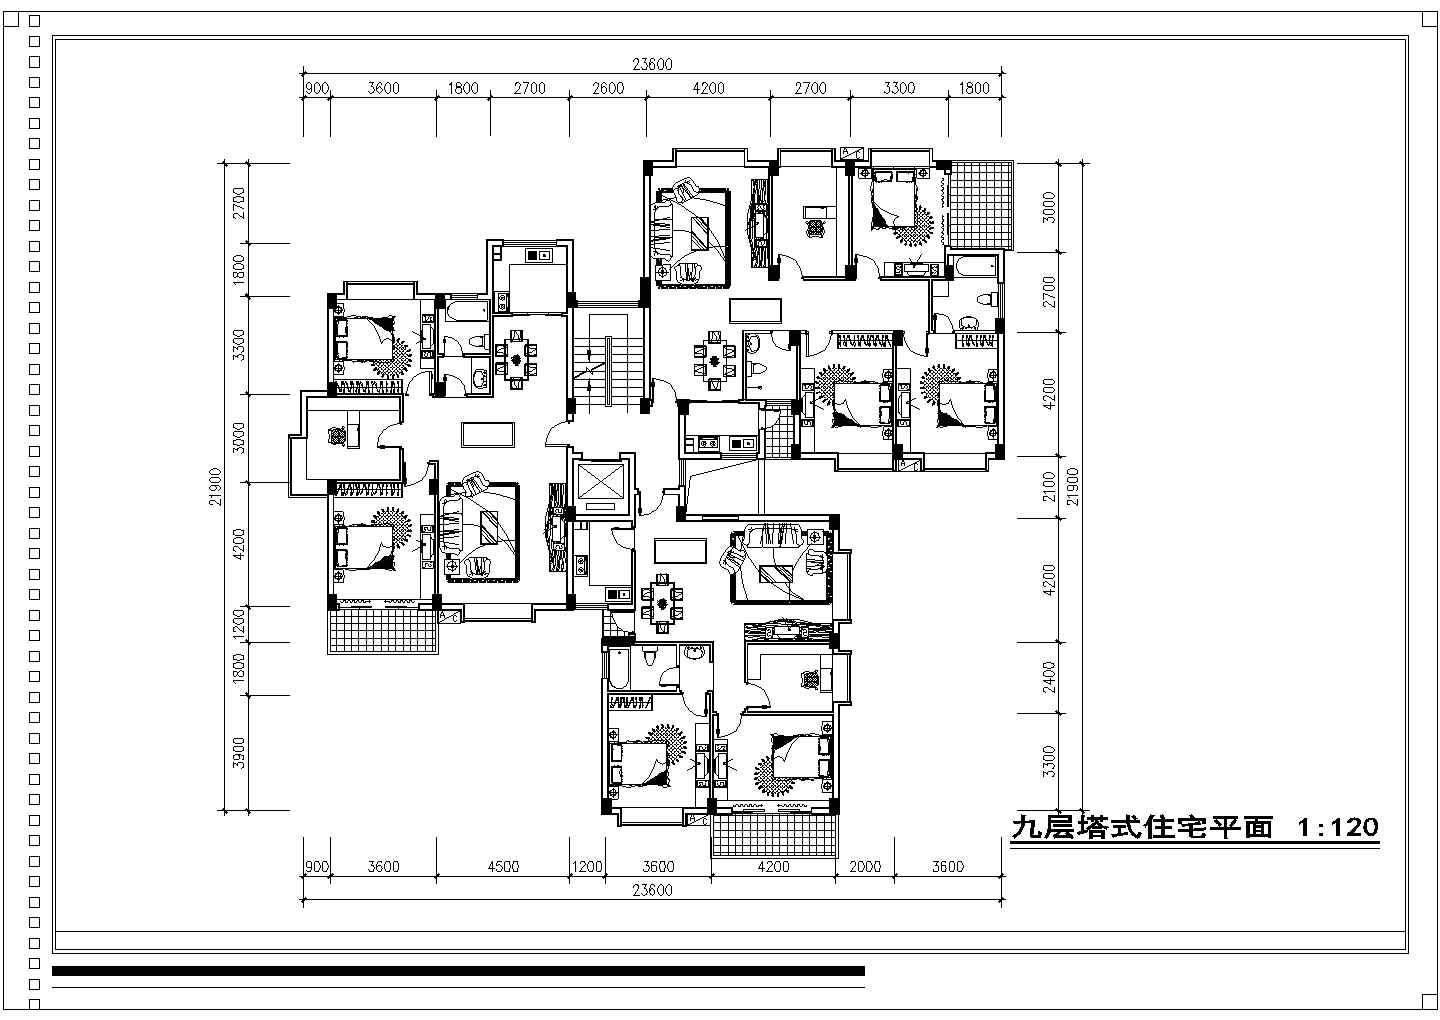 福州某新型小区住宅全套规划设计方案(含九层塔式住宅平面图)